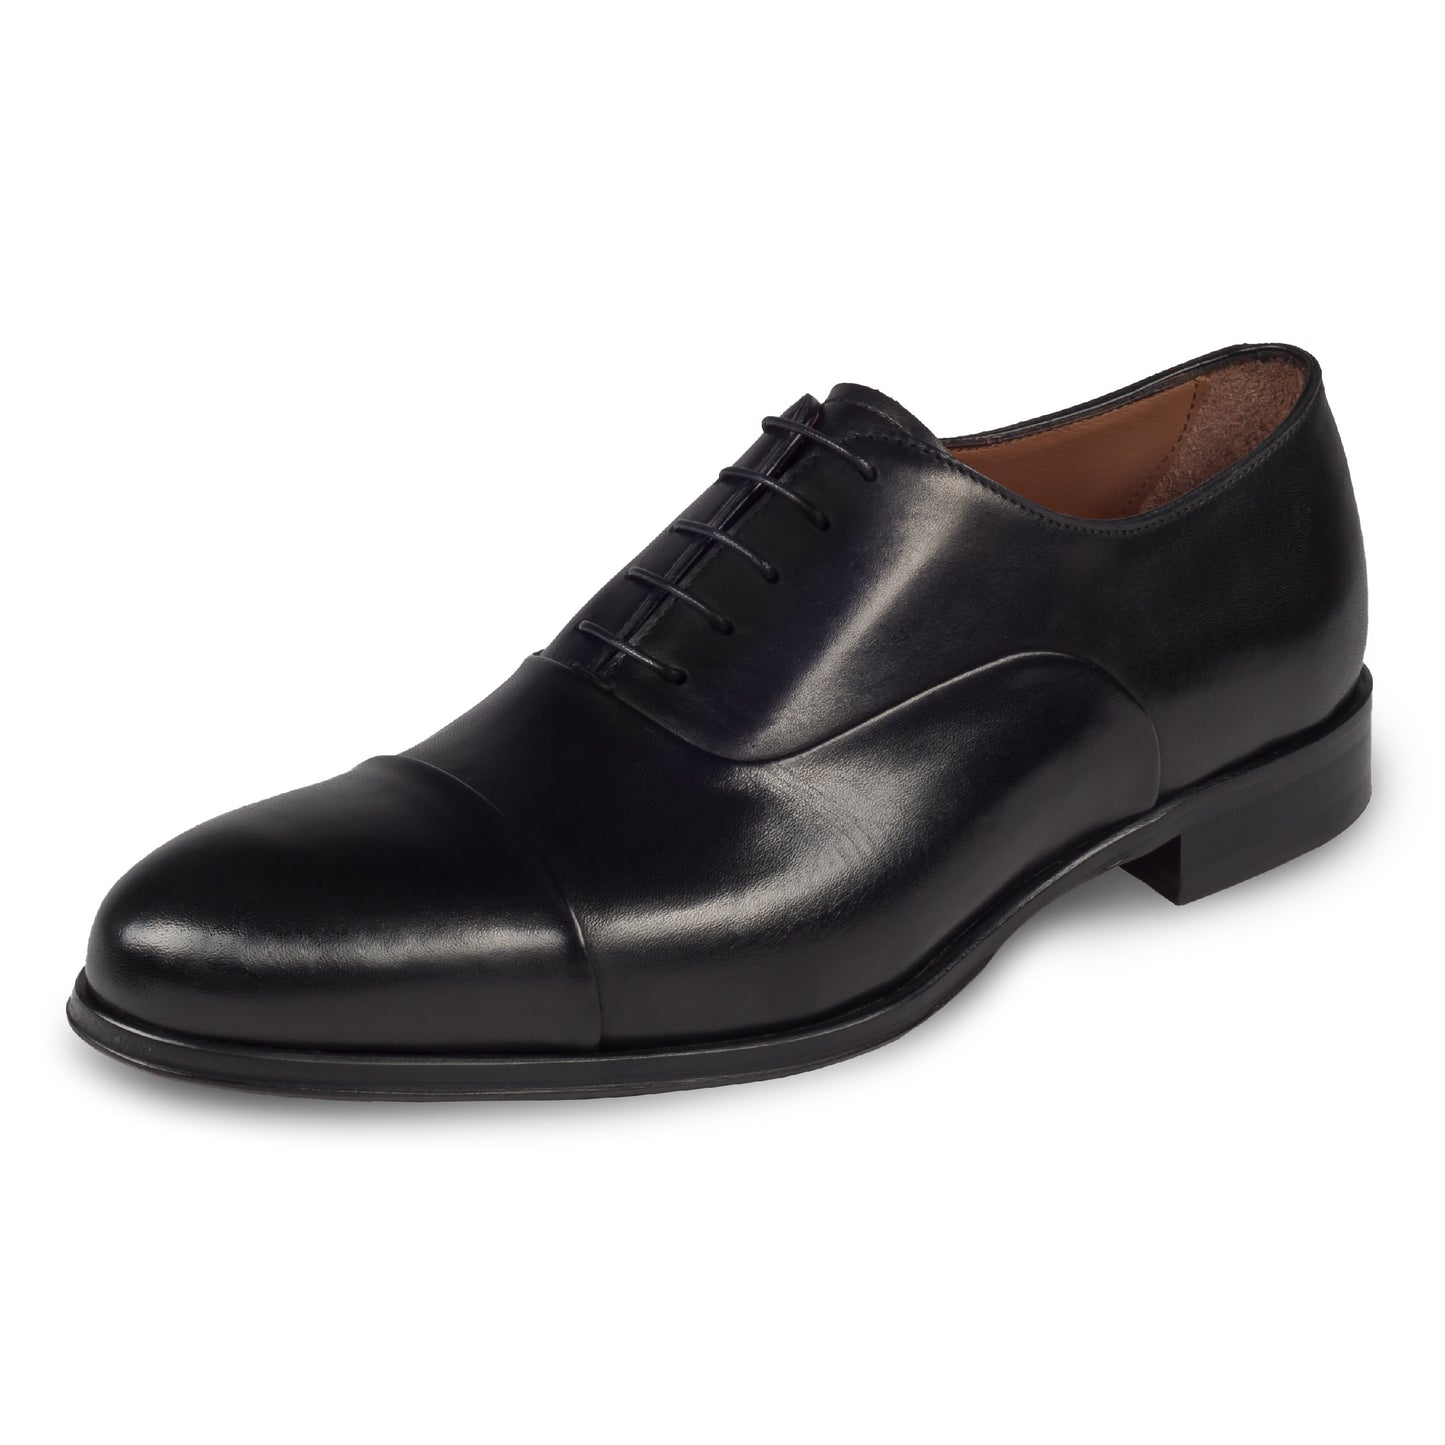 FLECS | Anzugschuh Oxford Captoe in schwarz von FLECS, durchgenäht. Schräge Ansicht linker Schuh. Bei Sisento.